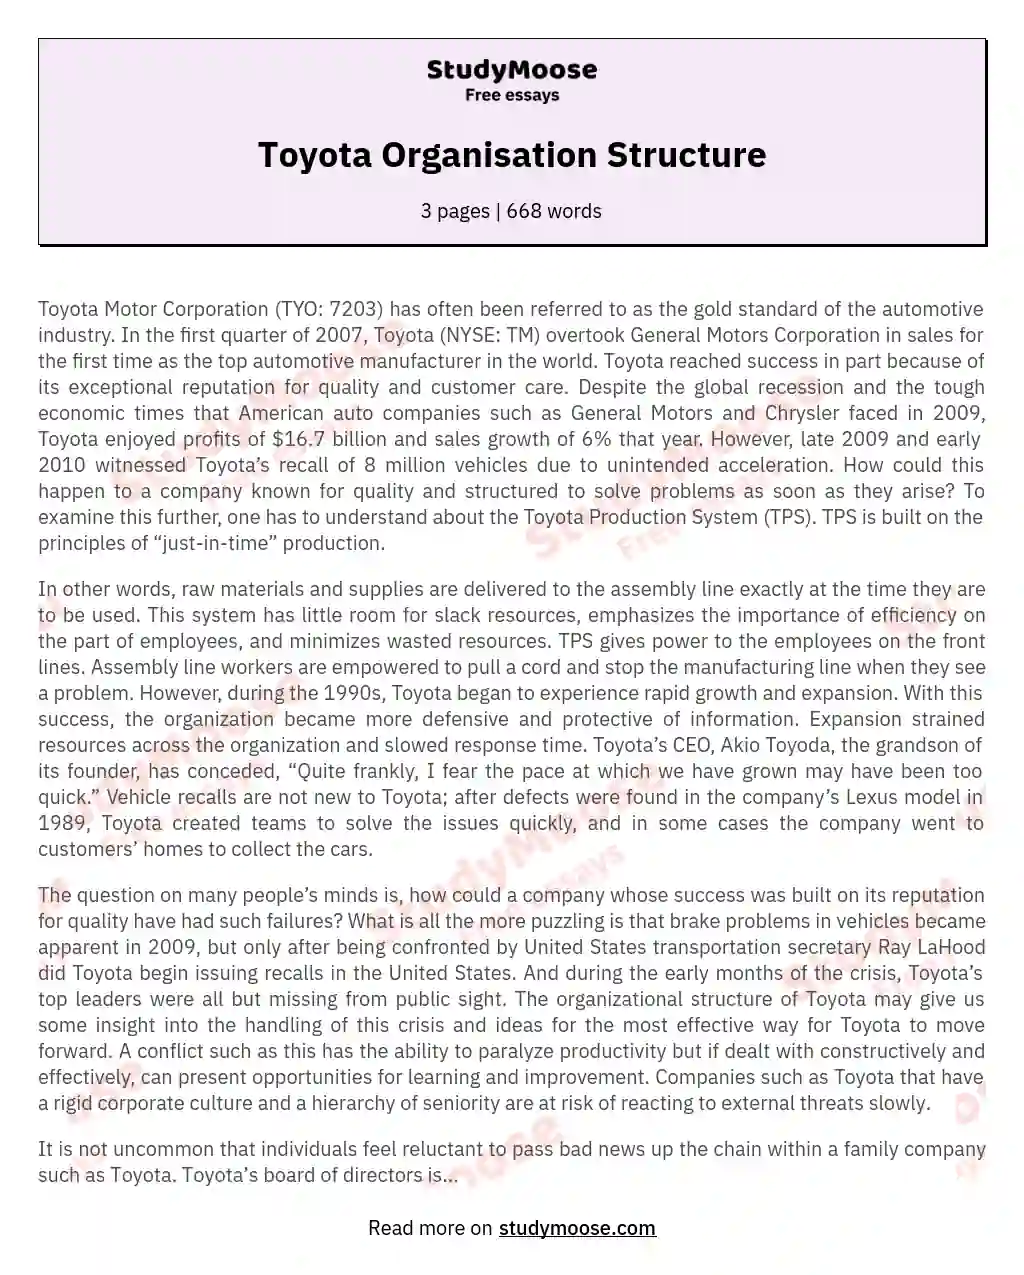 Toyota Organisation Structure essay